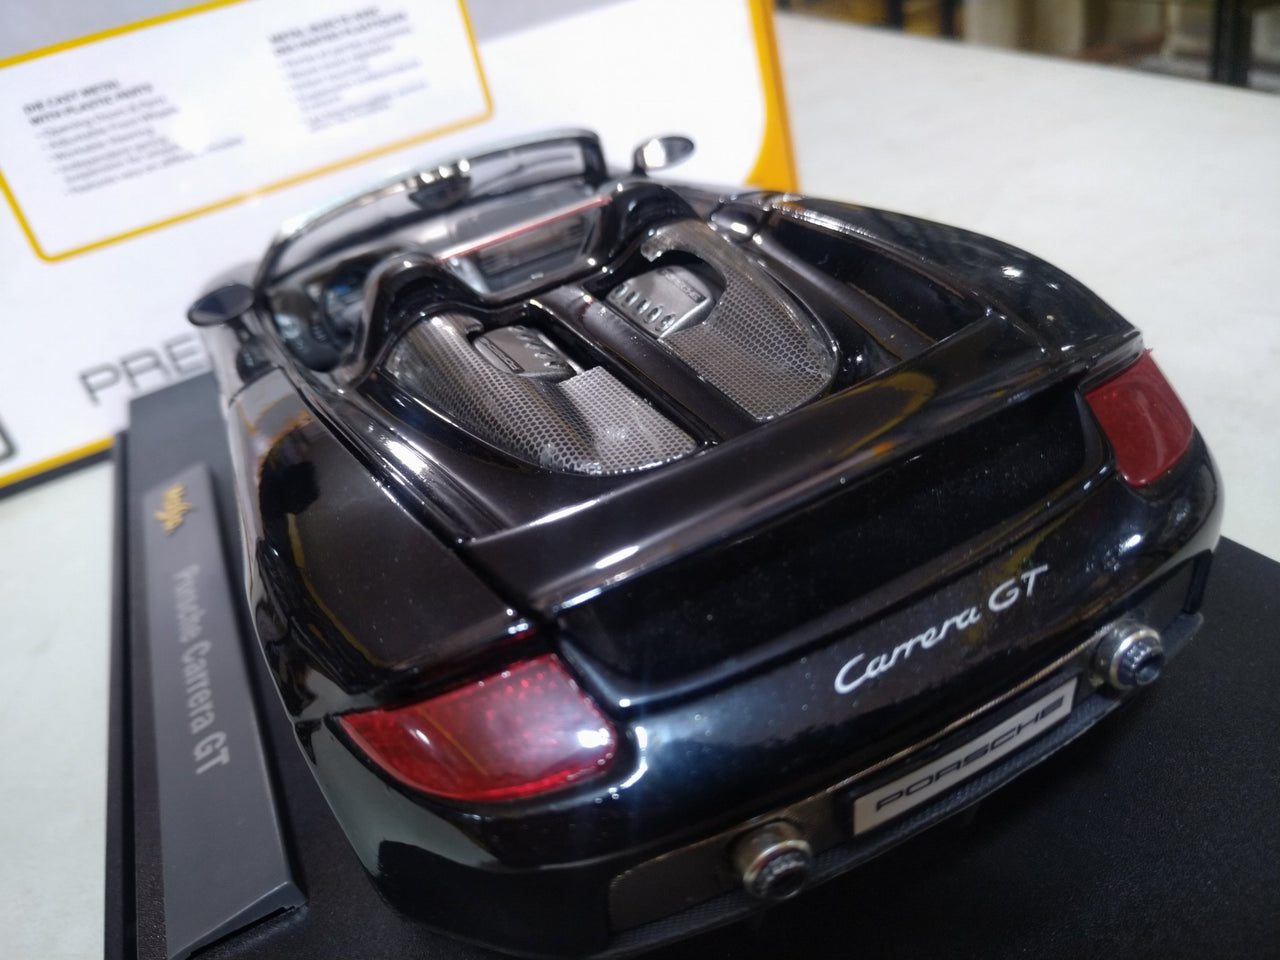 36622 Porsche Carrera GT Escala 1:18 (Maisto Premiere Edition) - CAT SERVICE PERU S.A.C.